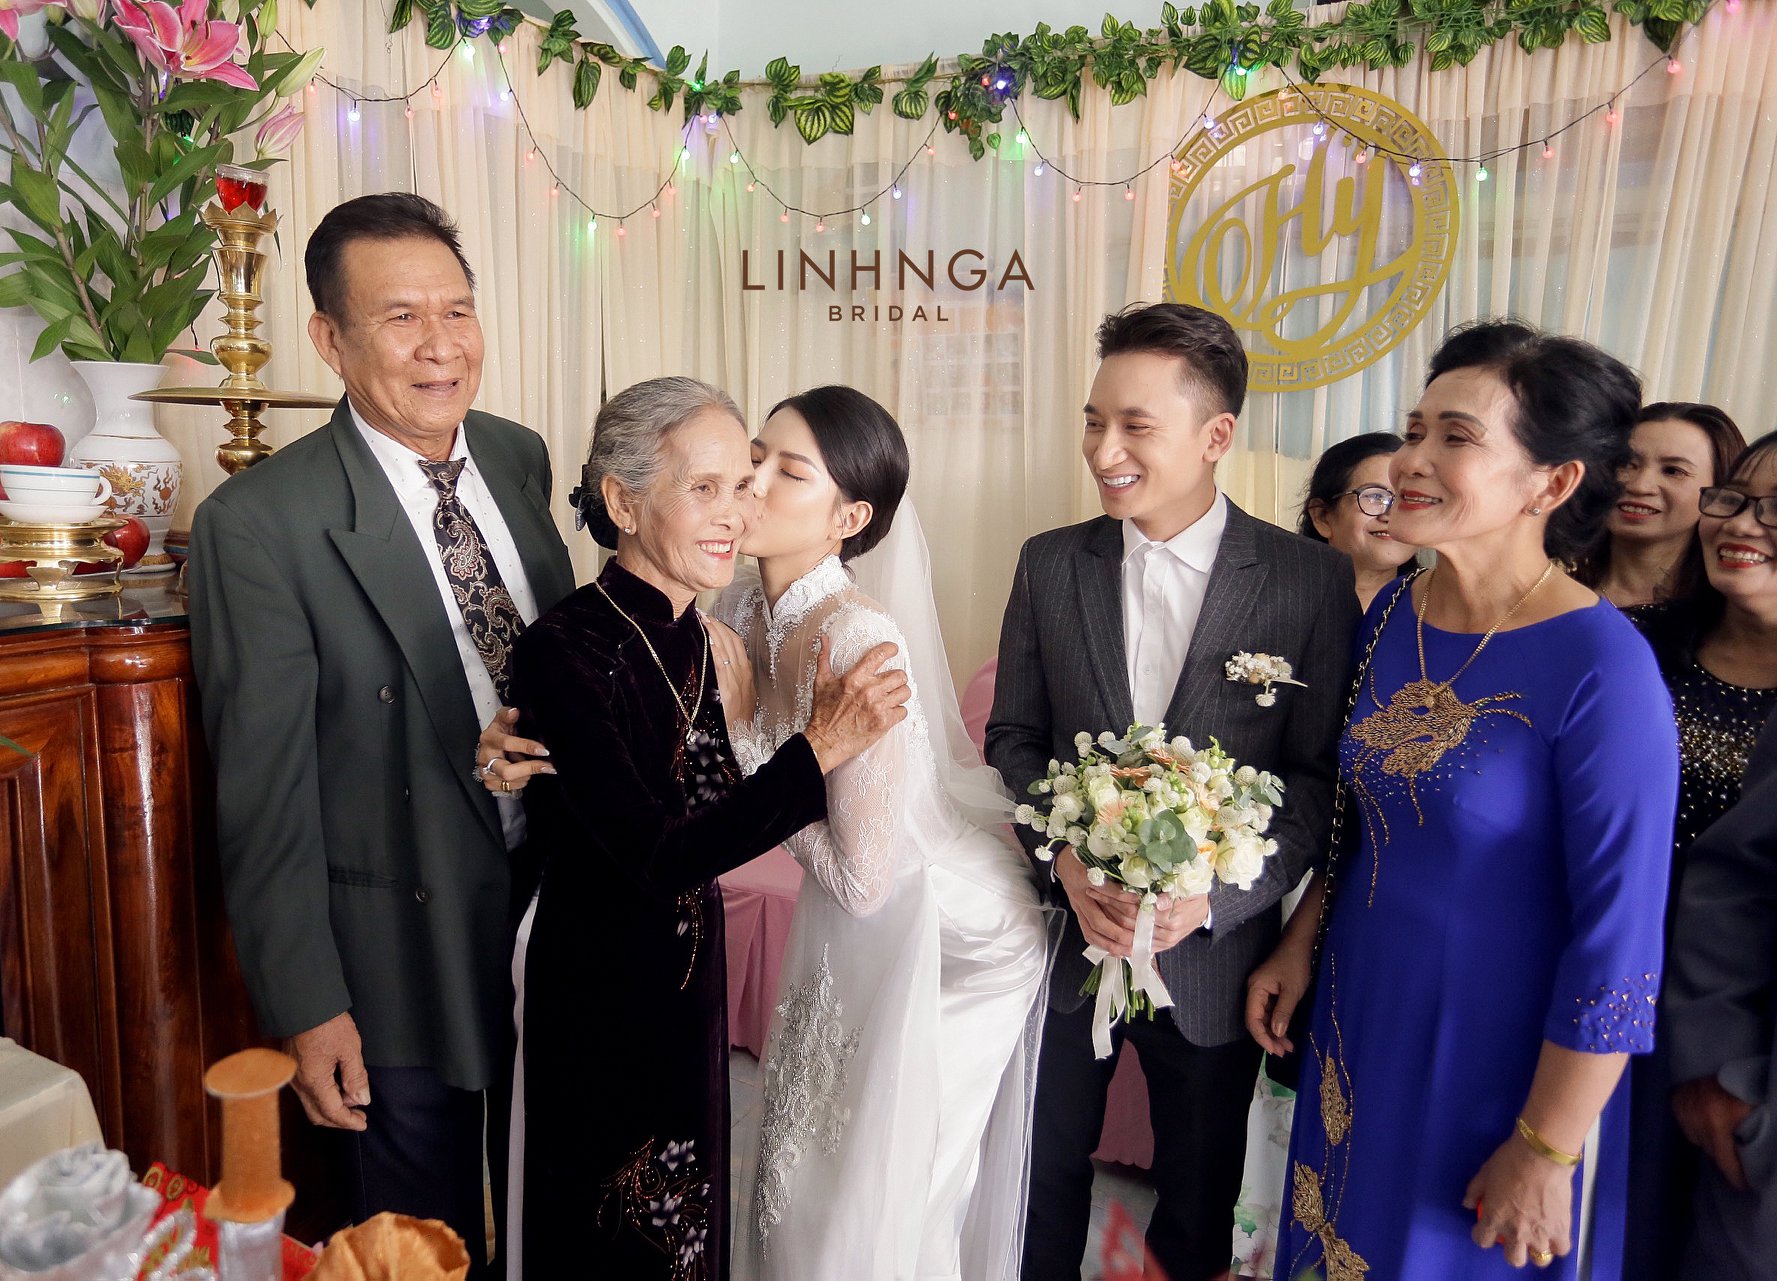 Đám cưới Phan Mạnh Quỳnh và vợ hot girl tại Nha Trang: Cô dâu khoe vòng 1 hững hờ, “cẩu lương” ngập trời trong ngày trọng đại - Ảnh 5.